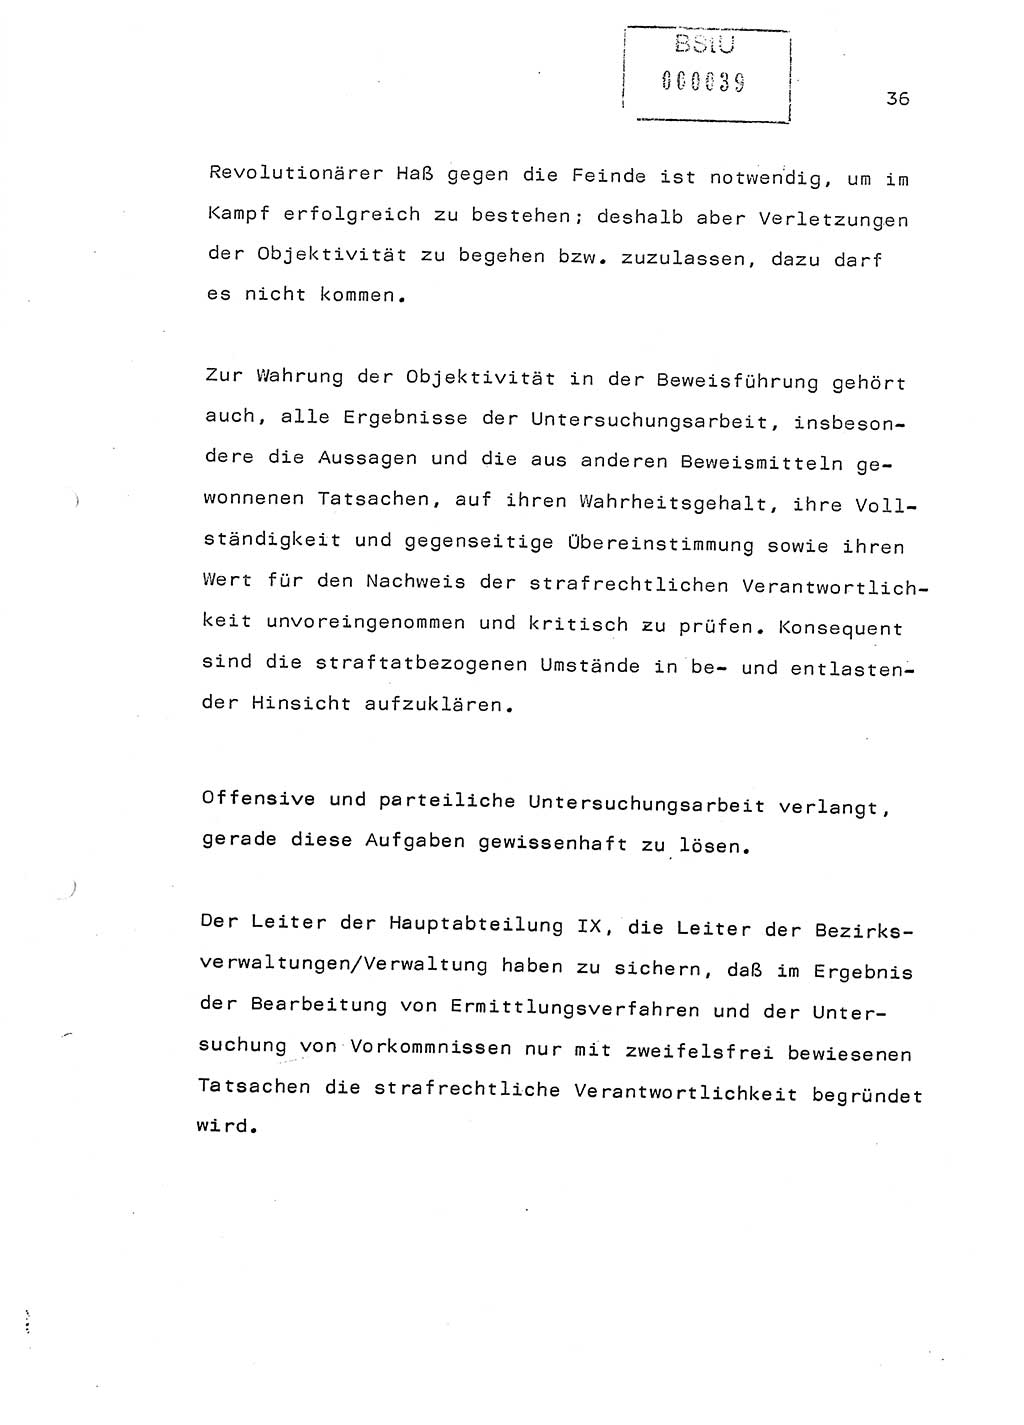 Referat (Generaloberst Erich Mielke) auf der Zentralen Dienstkonferenz am 24.5.1979 [Ministerium für Staatssicherheit (MfS), Deutsche Demokratische Republik (DDR), Der Minister], Berlin 1979, Seite 36 (Ref. DK DDR MfS Min. /79 1979, S. 36)